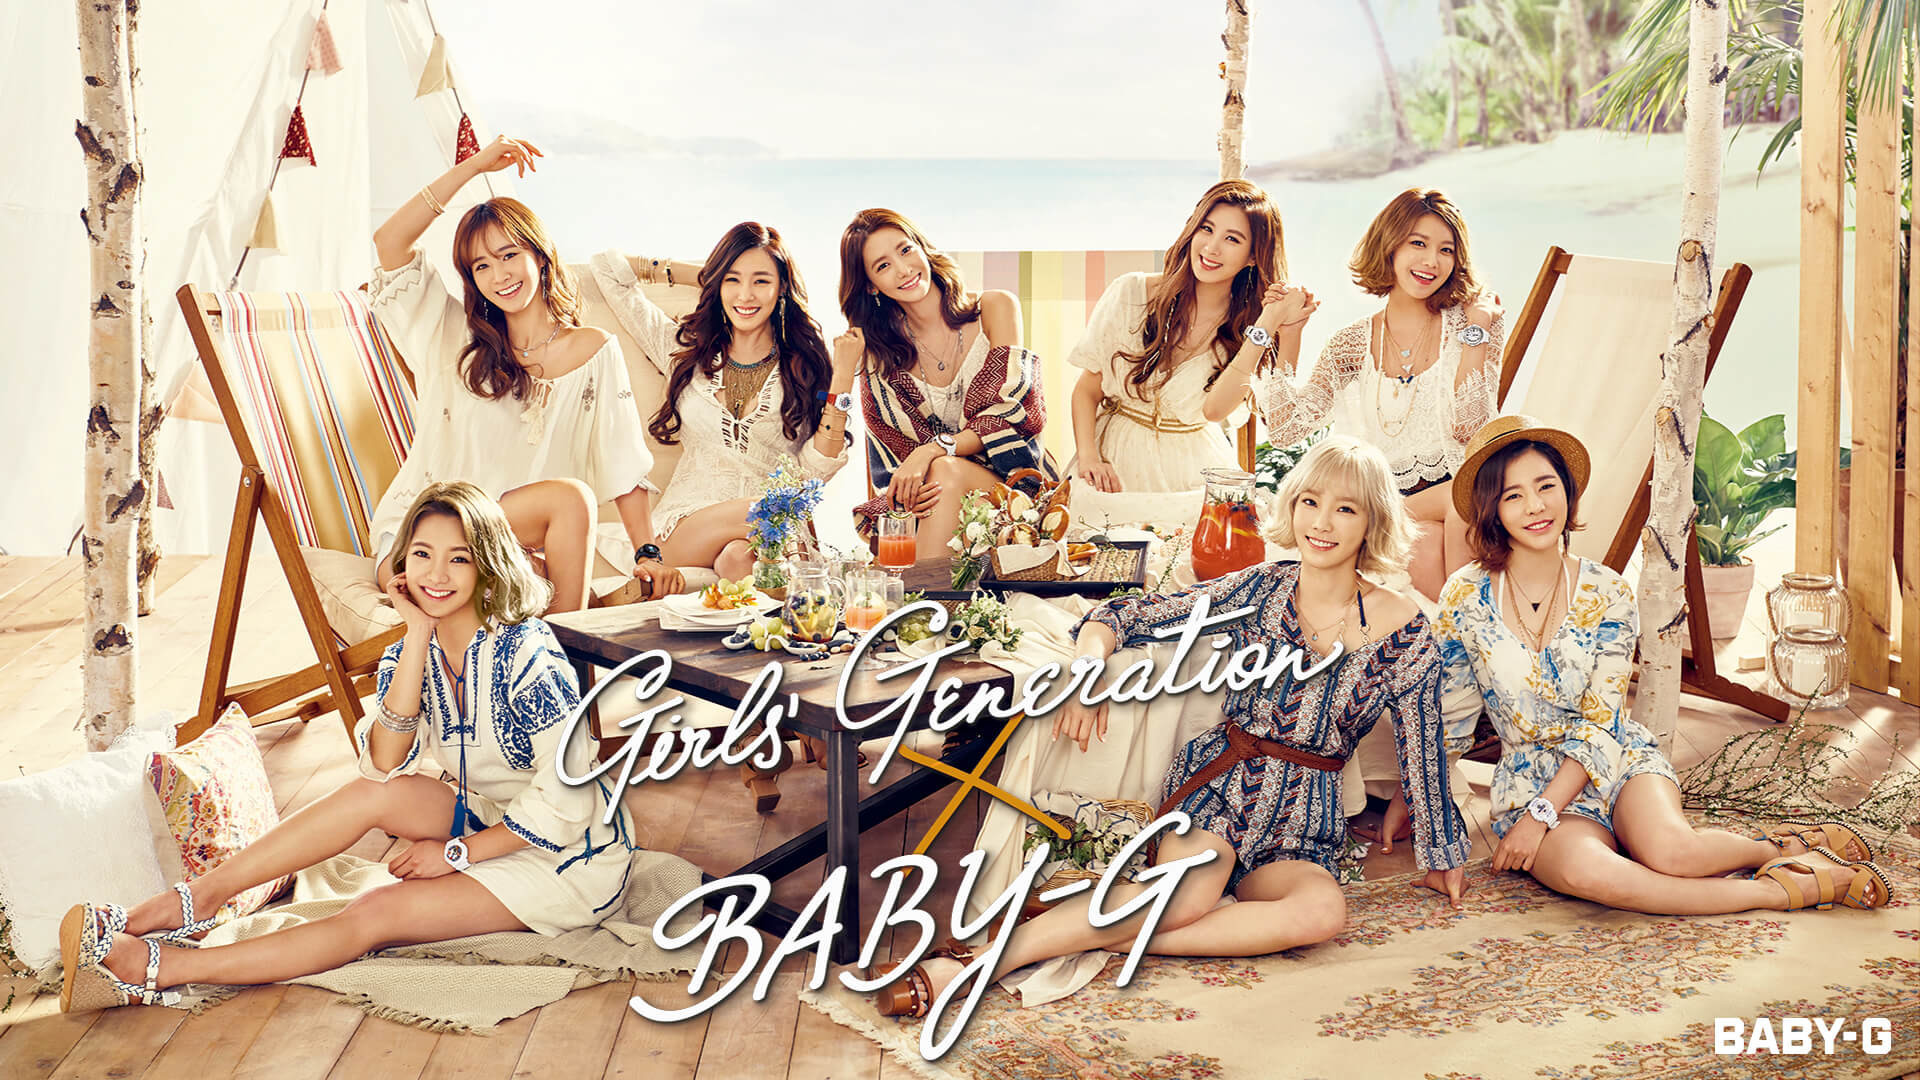 1920x1080  Girls Generation Casio Baby-G Summer 2016 Wallpaper